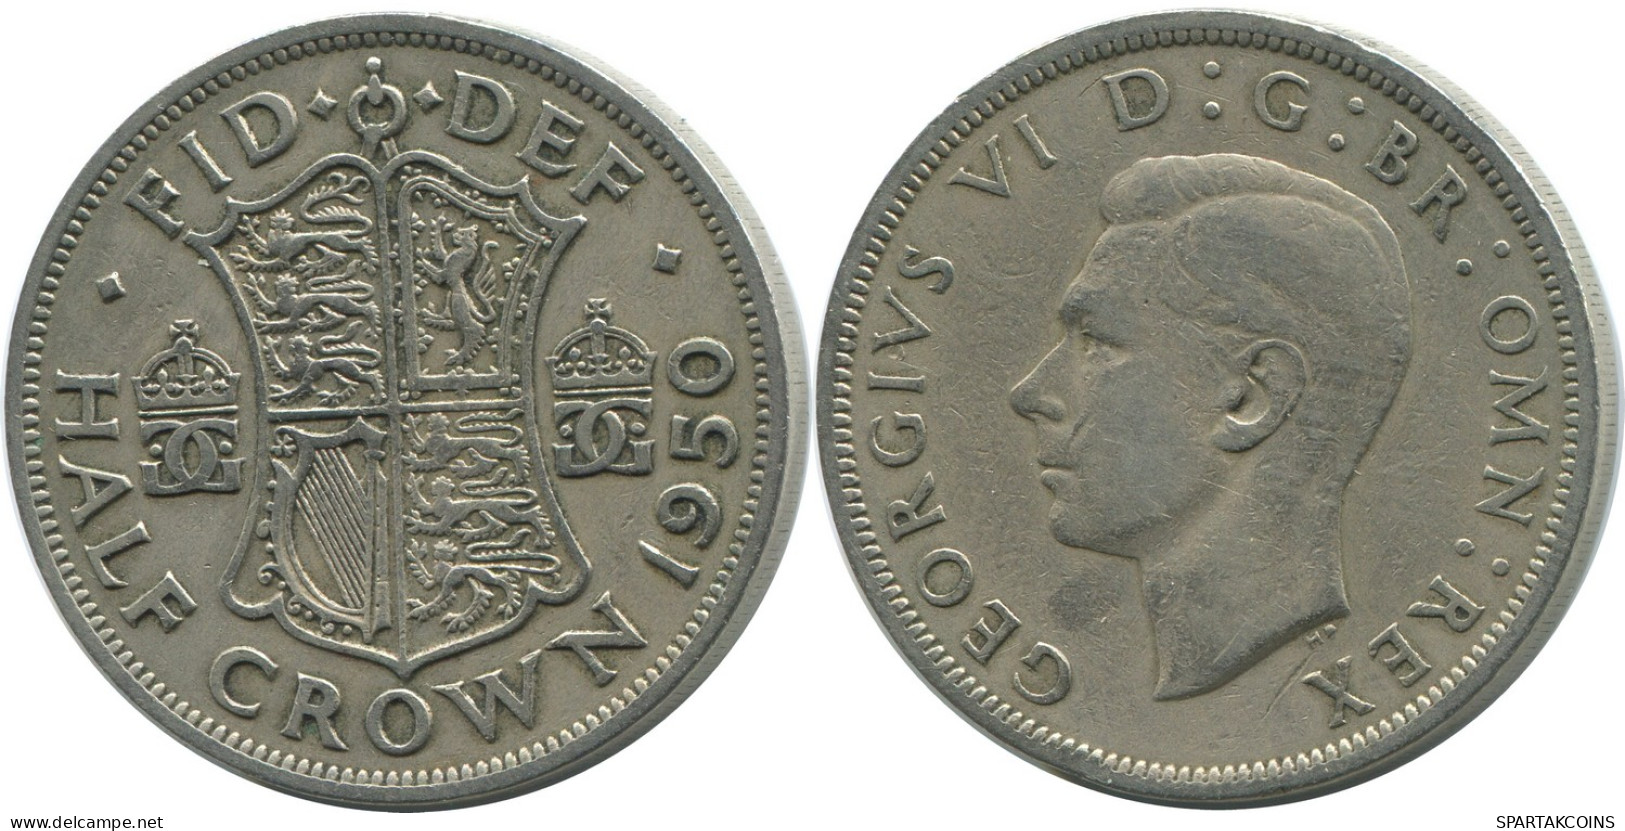 HALF CROWN 1950 UK GREAT BRITAIN Coin #AH012.1.U - K. 1/2 Crown